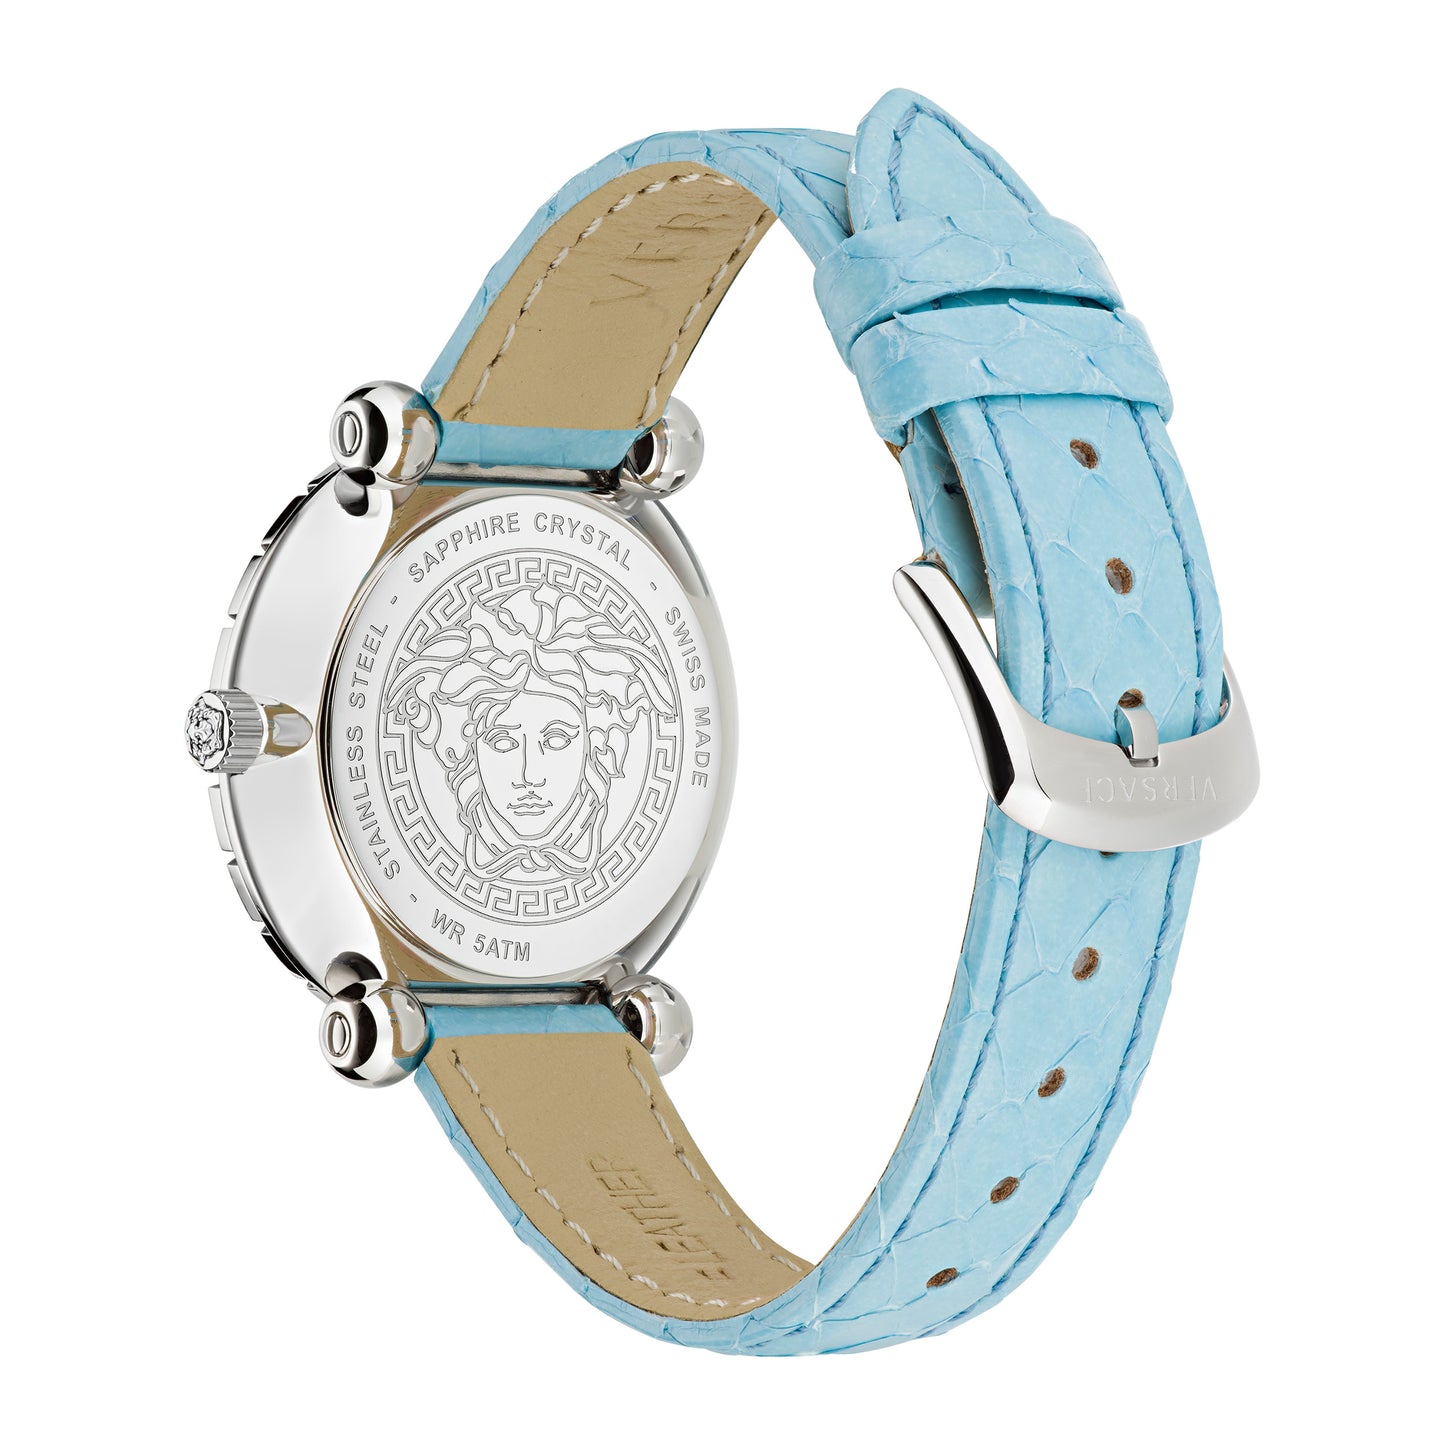 Versace Wrist Watch Women Light Blue Dial - VE6I00123